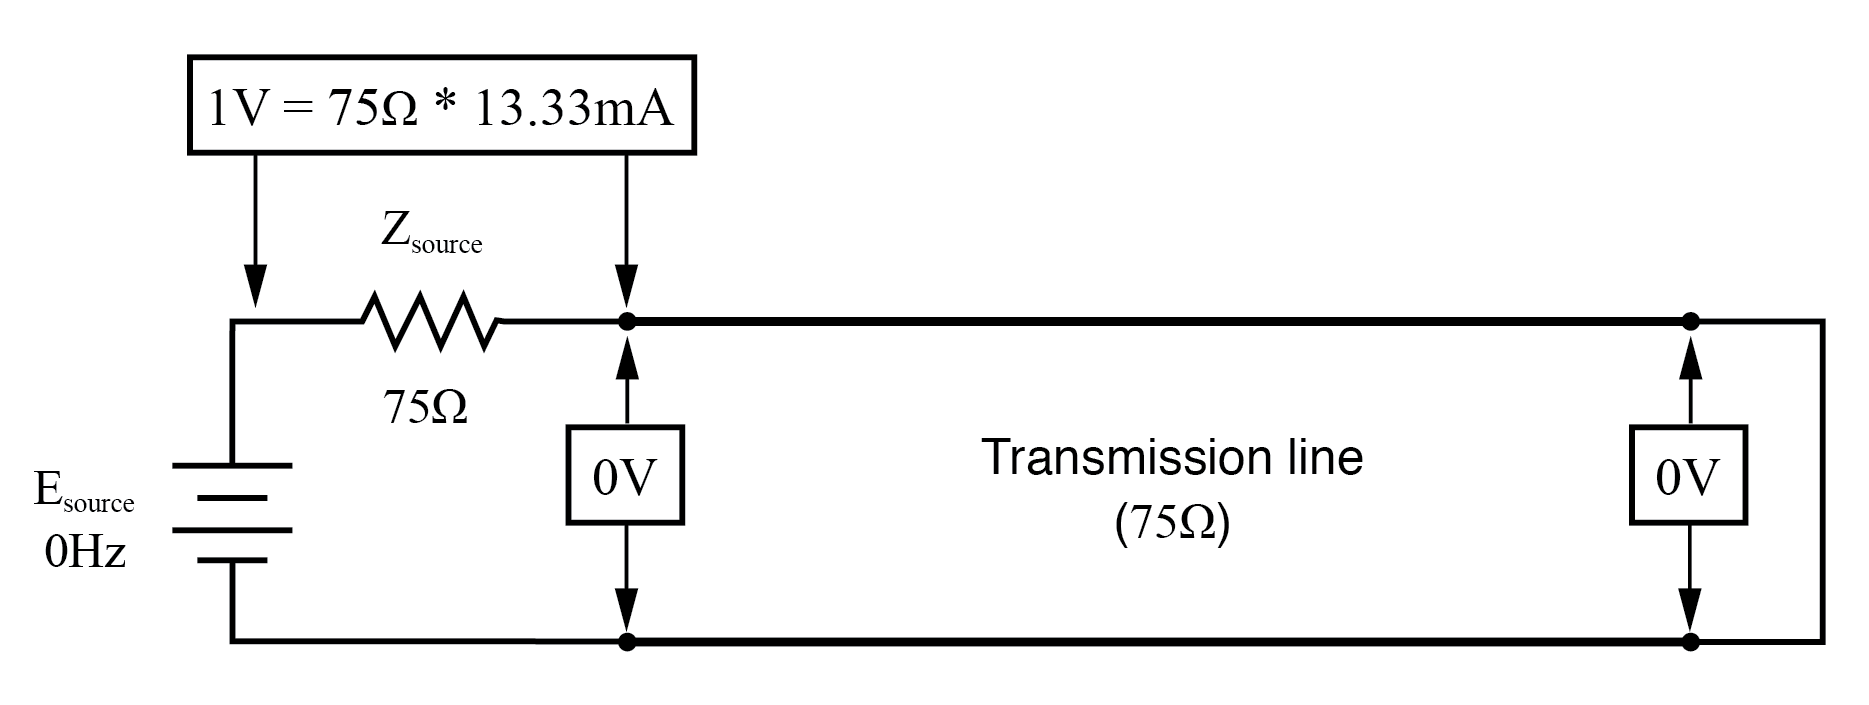 voltage measured between node image2